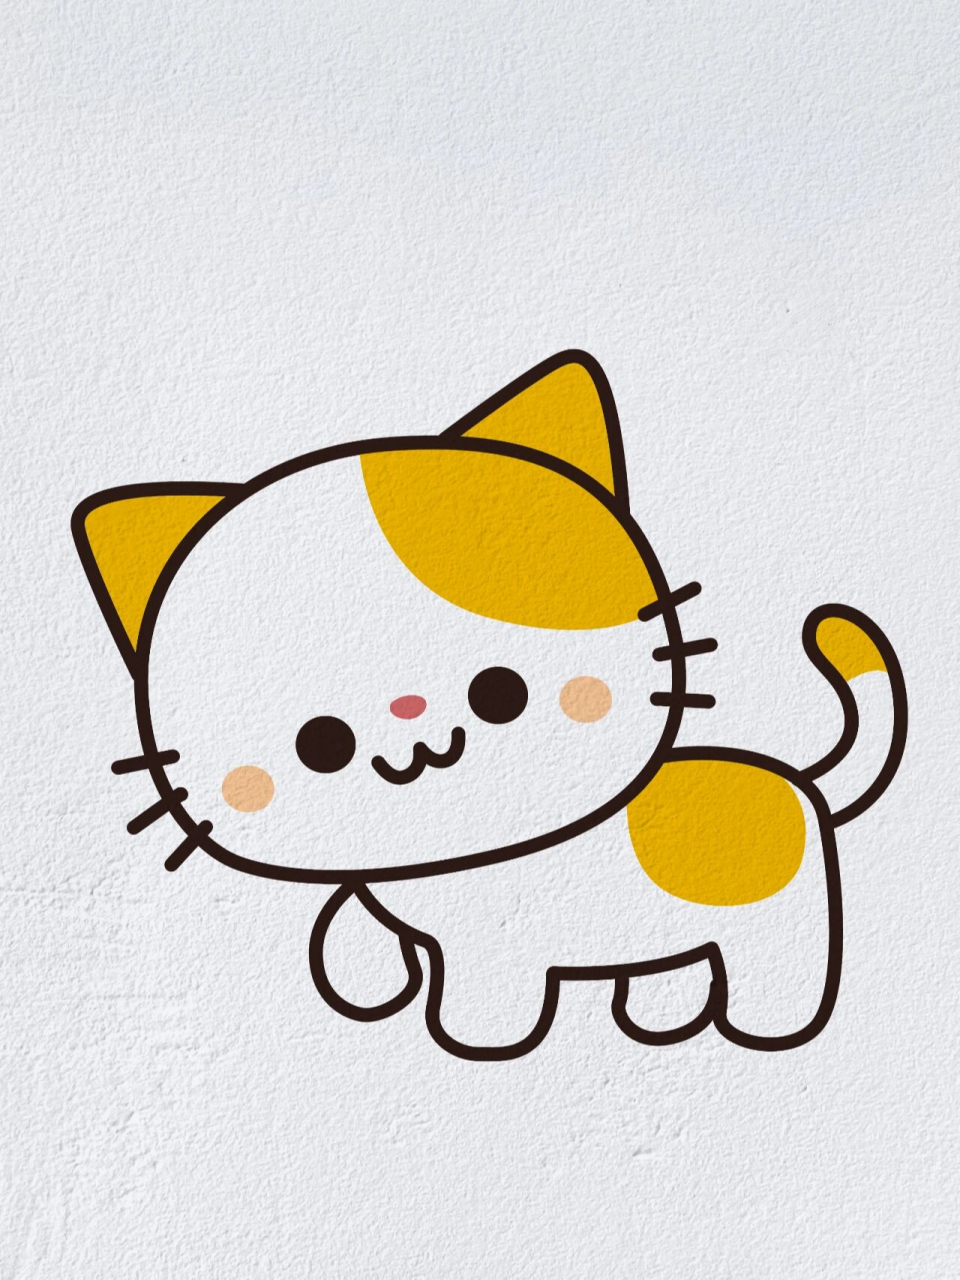 动物简笔画之可爱的小猫咪(内附过程图)